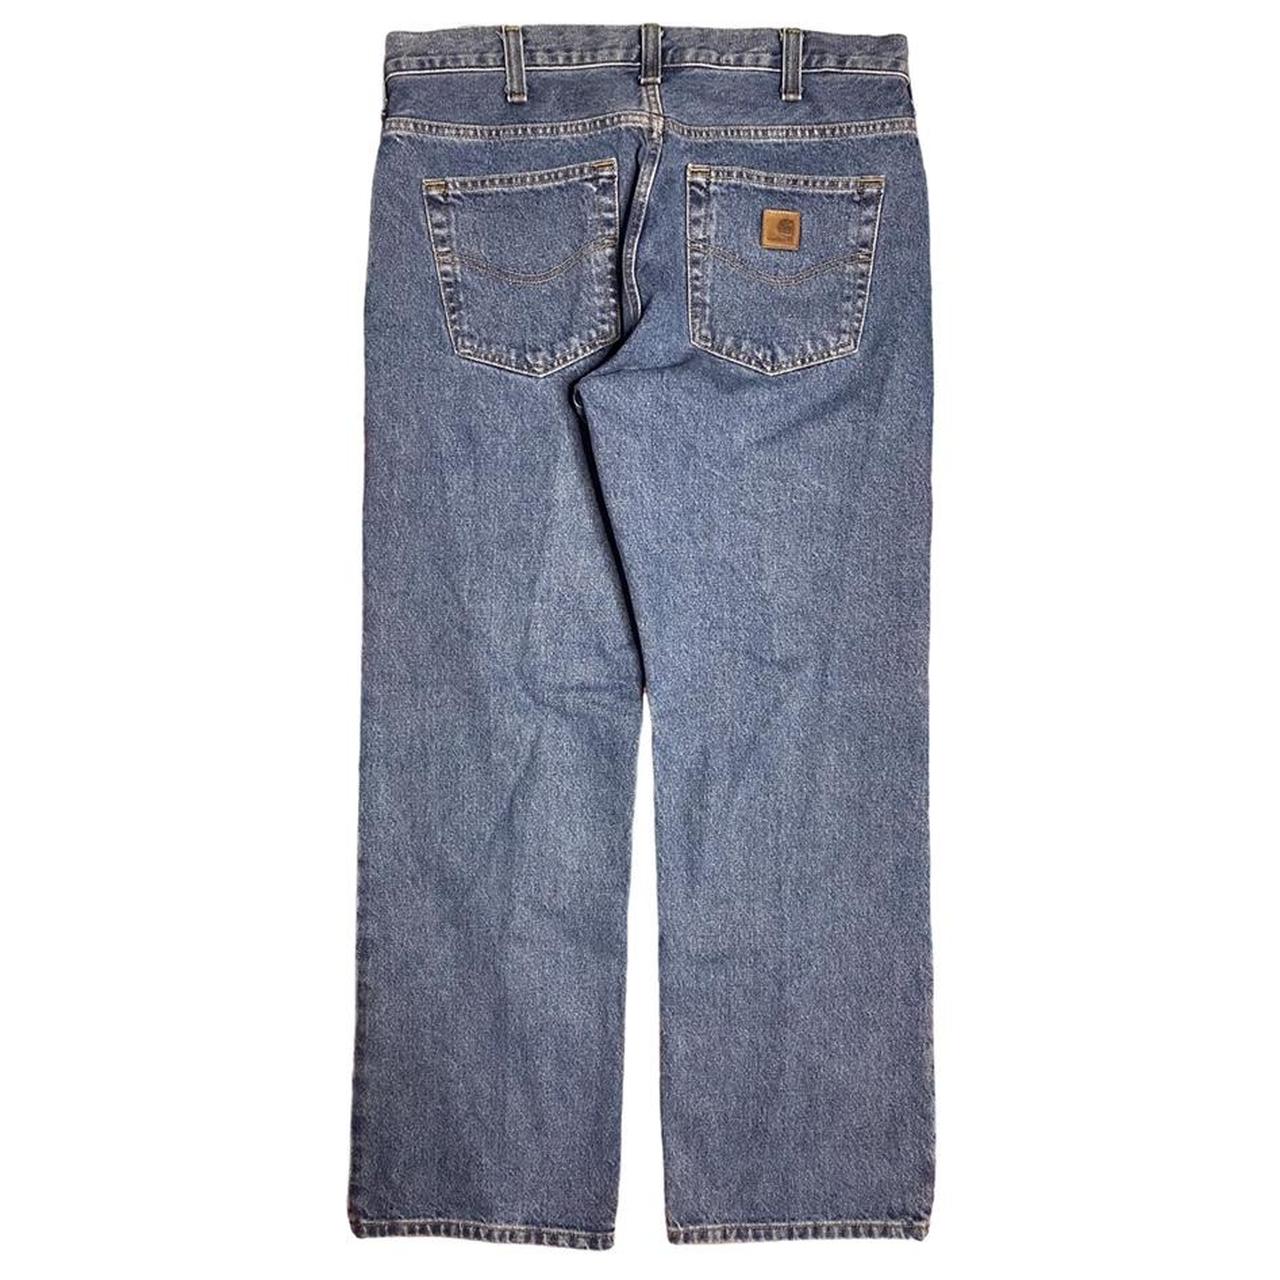 Carhartt denim jeans 👖 Size 34 x 30 / W 17in x L... - Depop